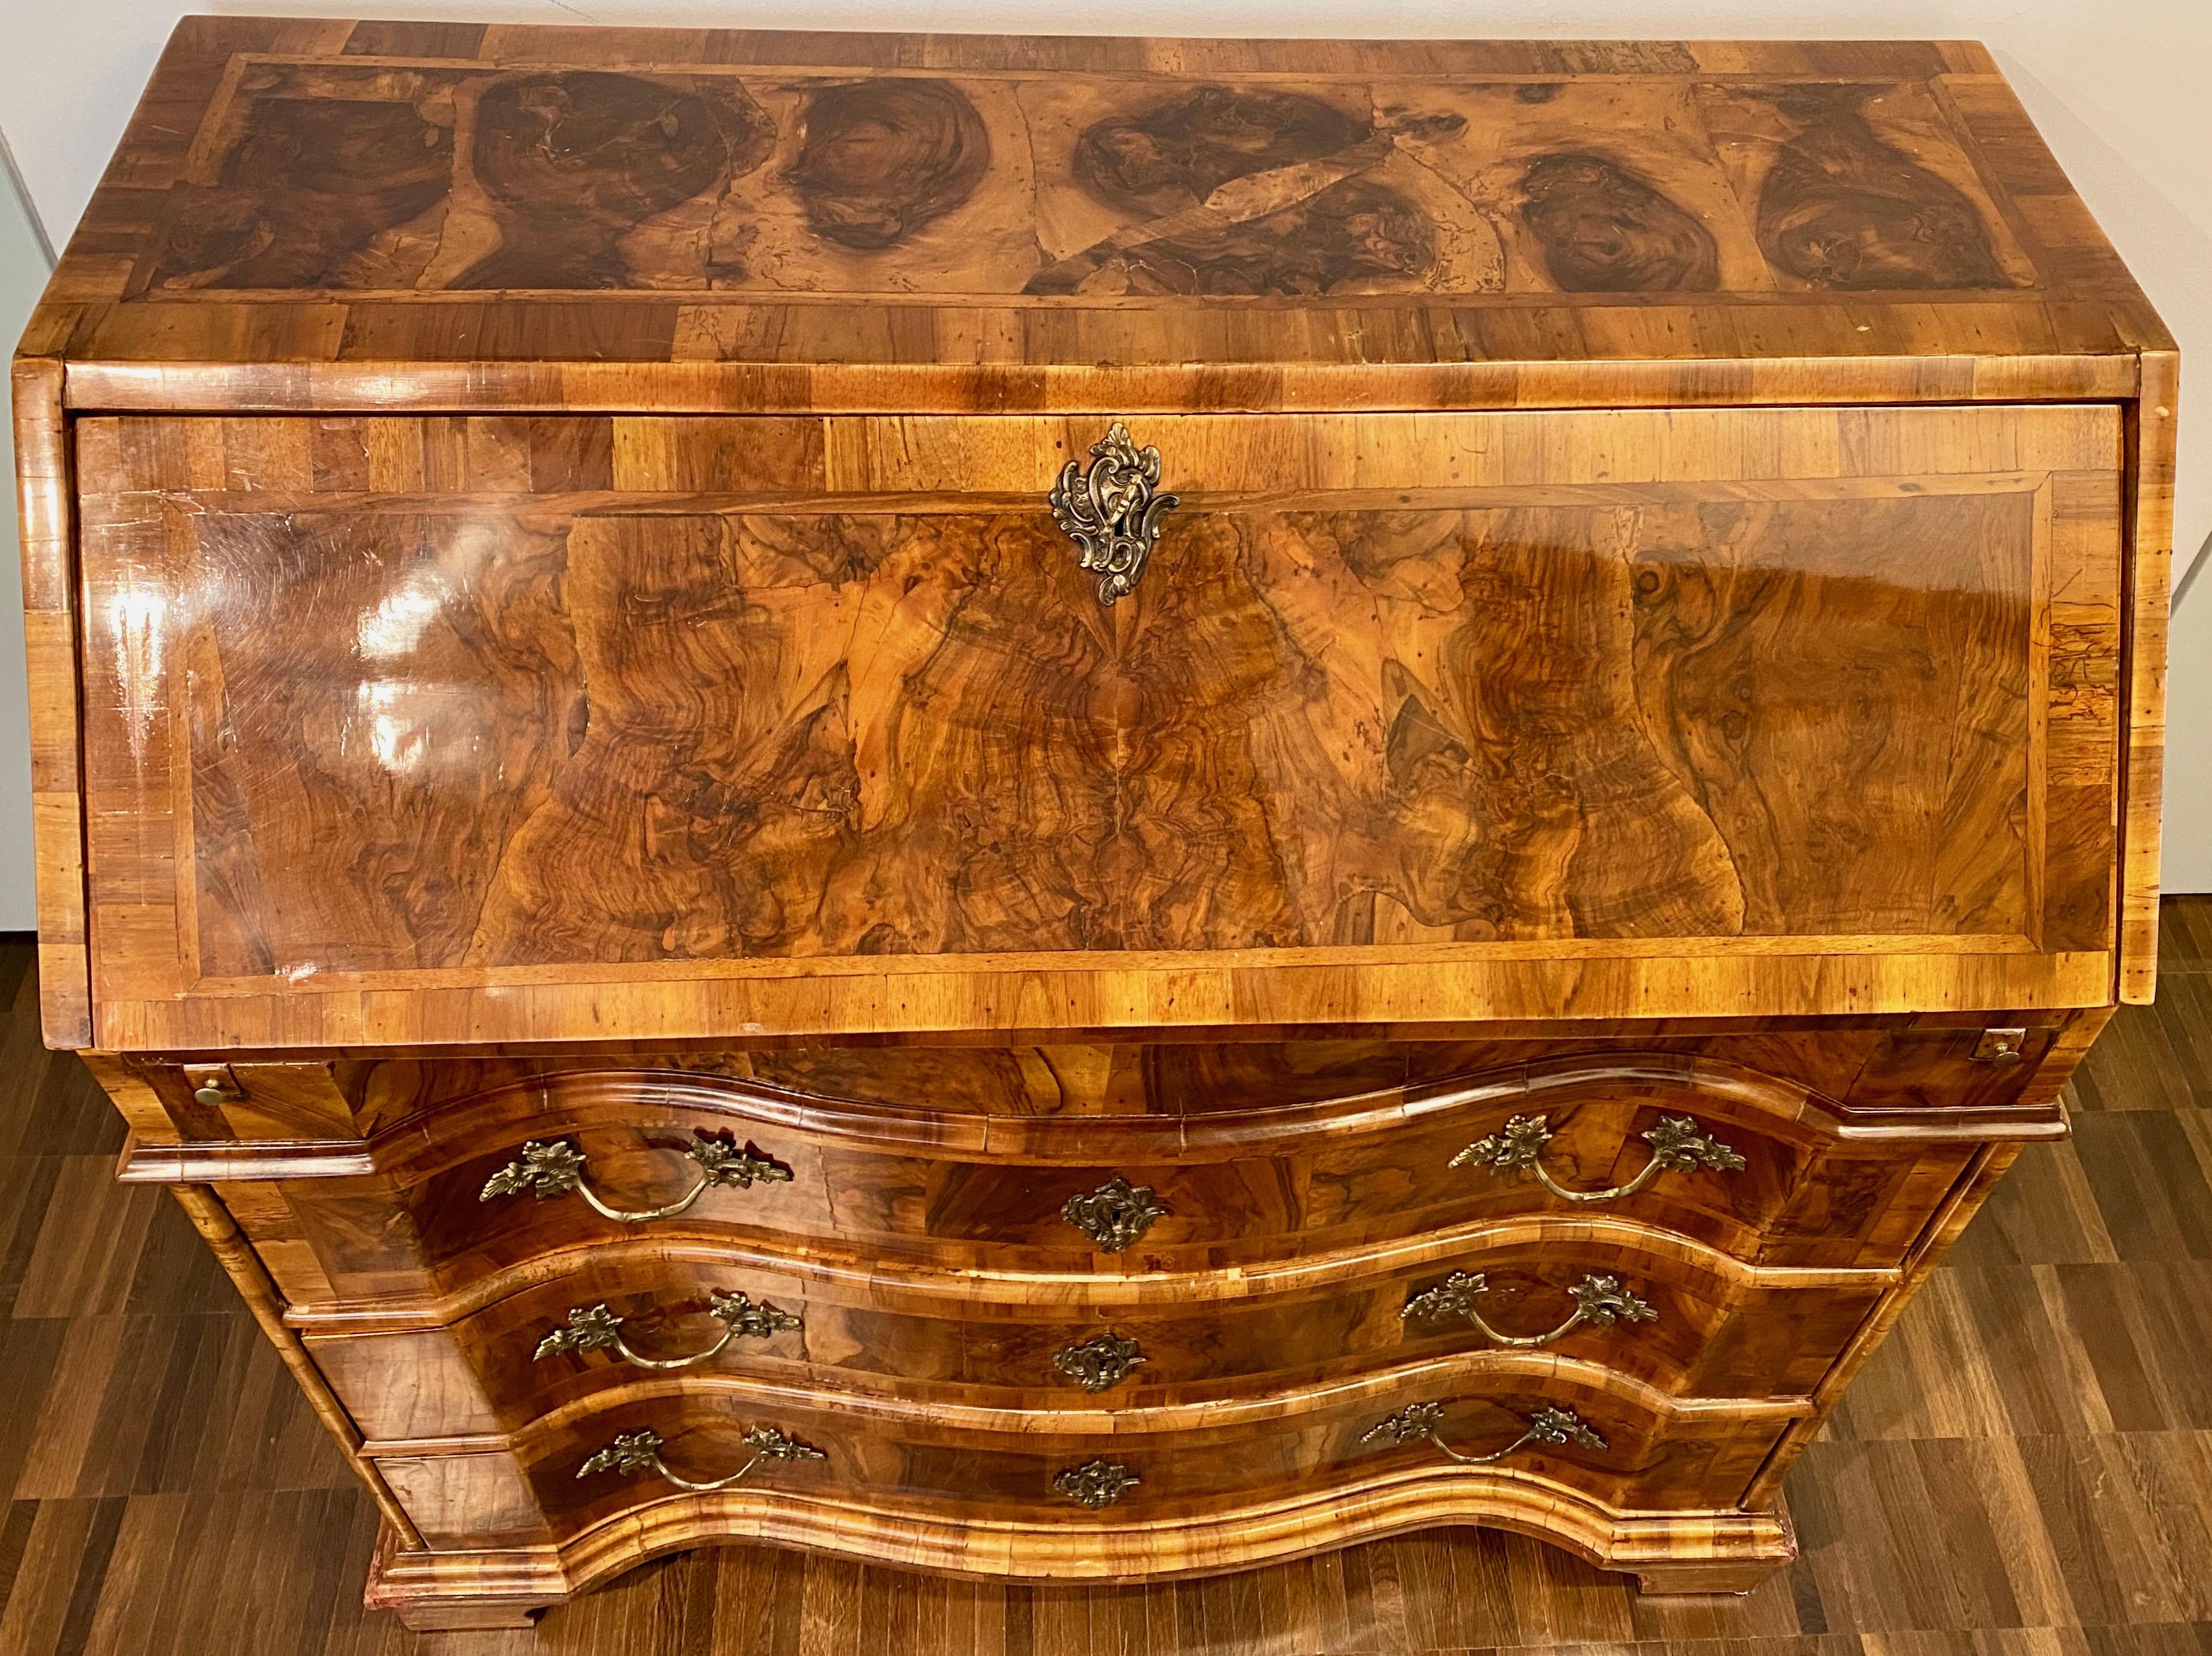 Italienischer Wurzelholz-Schreibtisch im venezianischen Rokoko-Stil, 18. Jahrhundert.

Ein mit Nussbaum und Wurzelholz furniertes Bureau aus der Louis XV-Zeit. Das Innere des Schrägfrontschreibtisches ist mit je einer Schublade auf jeder Seite einer